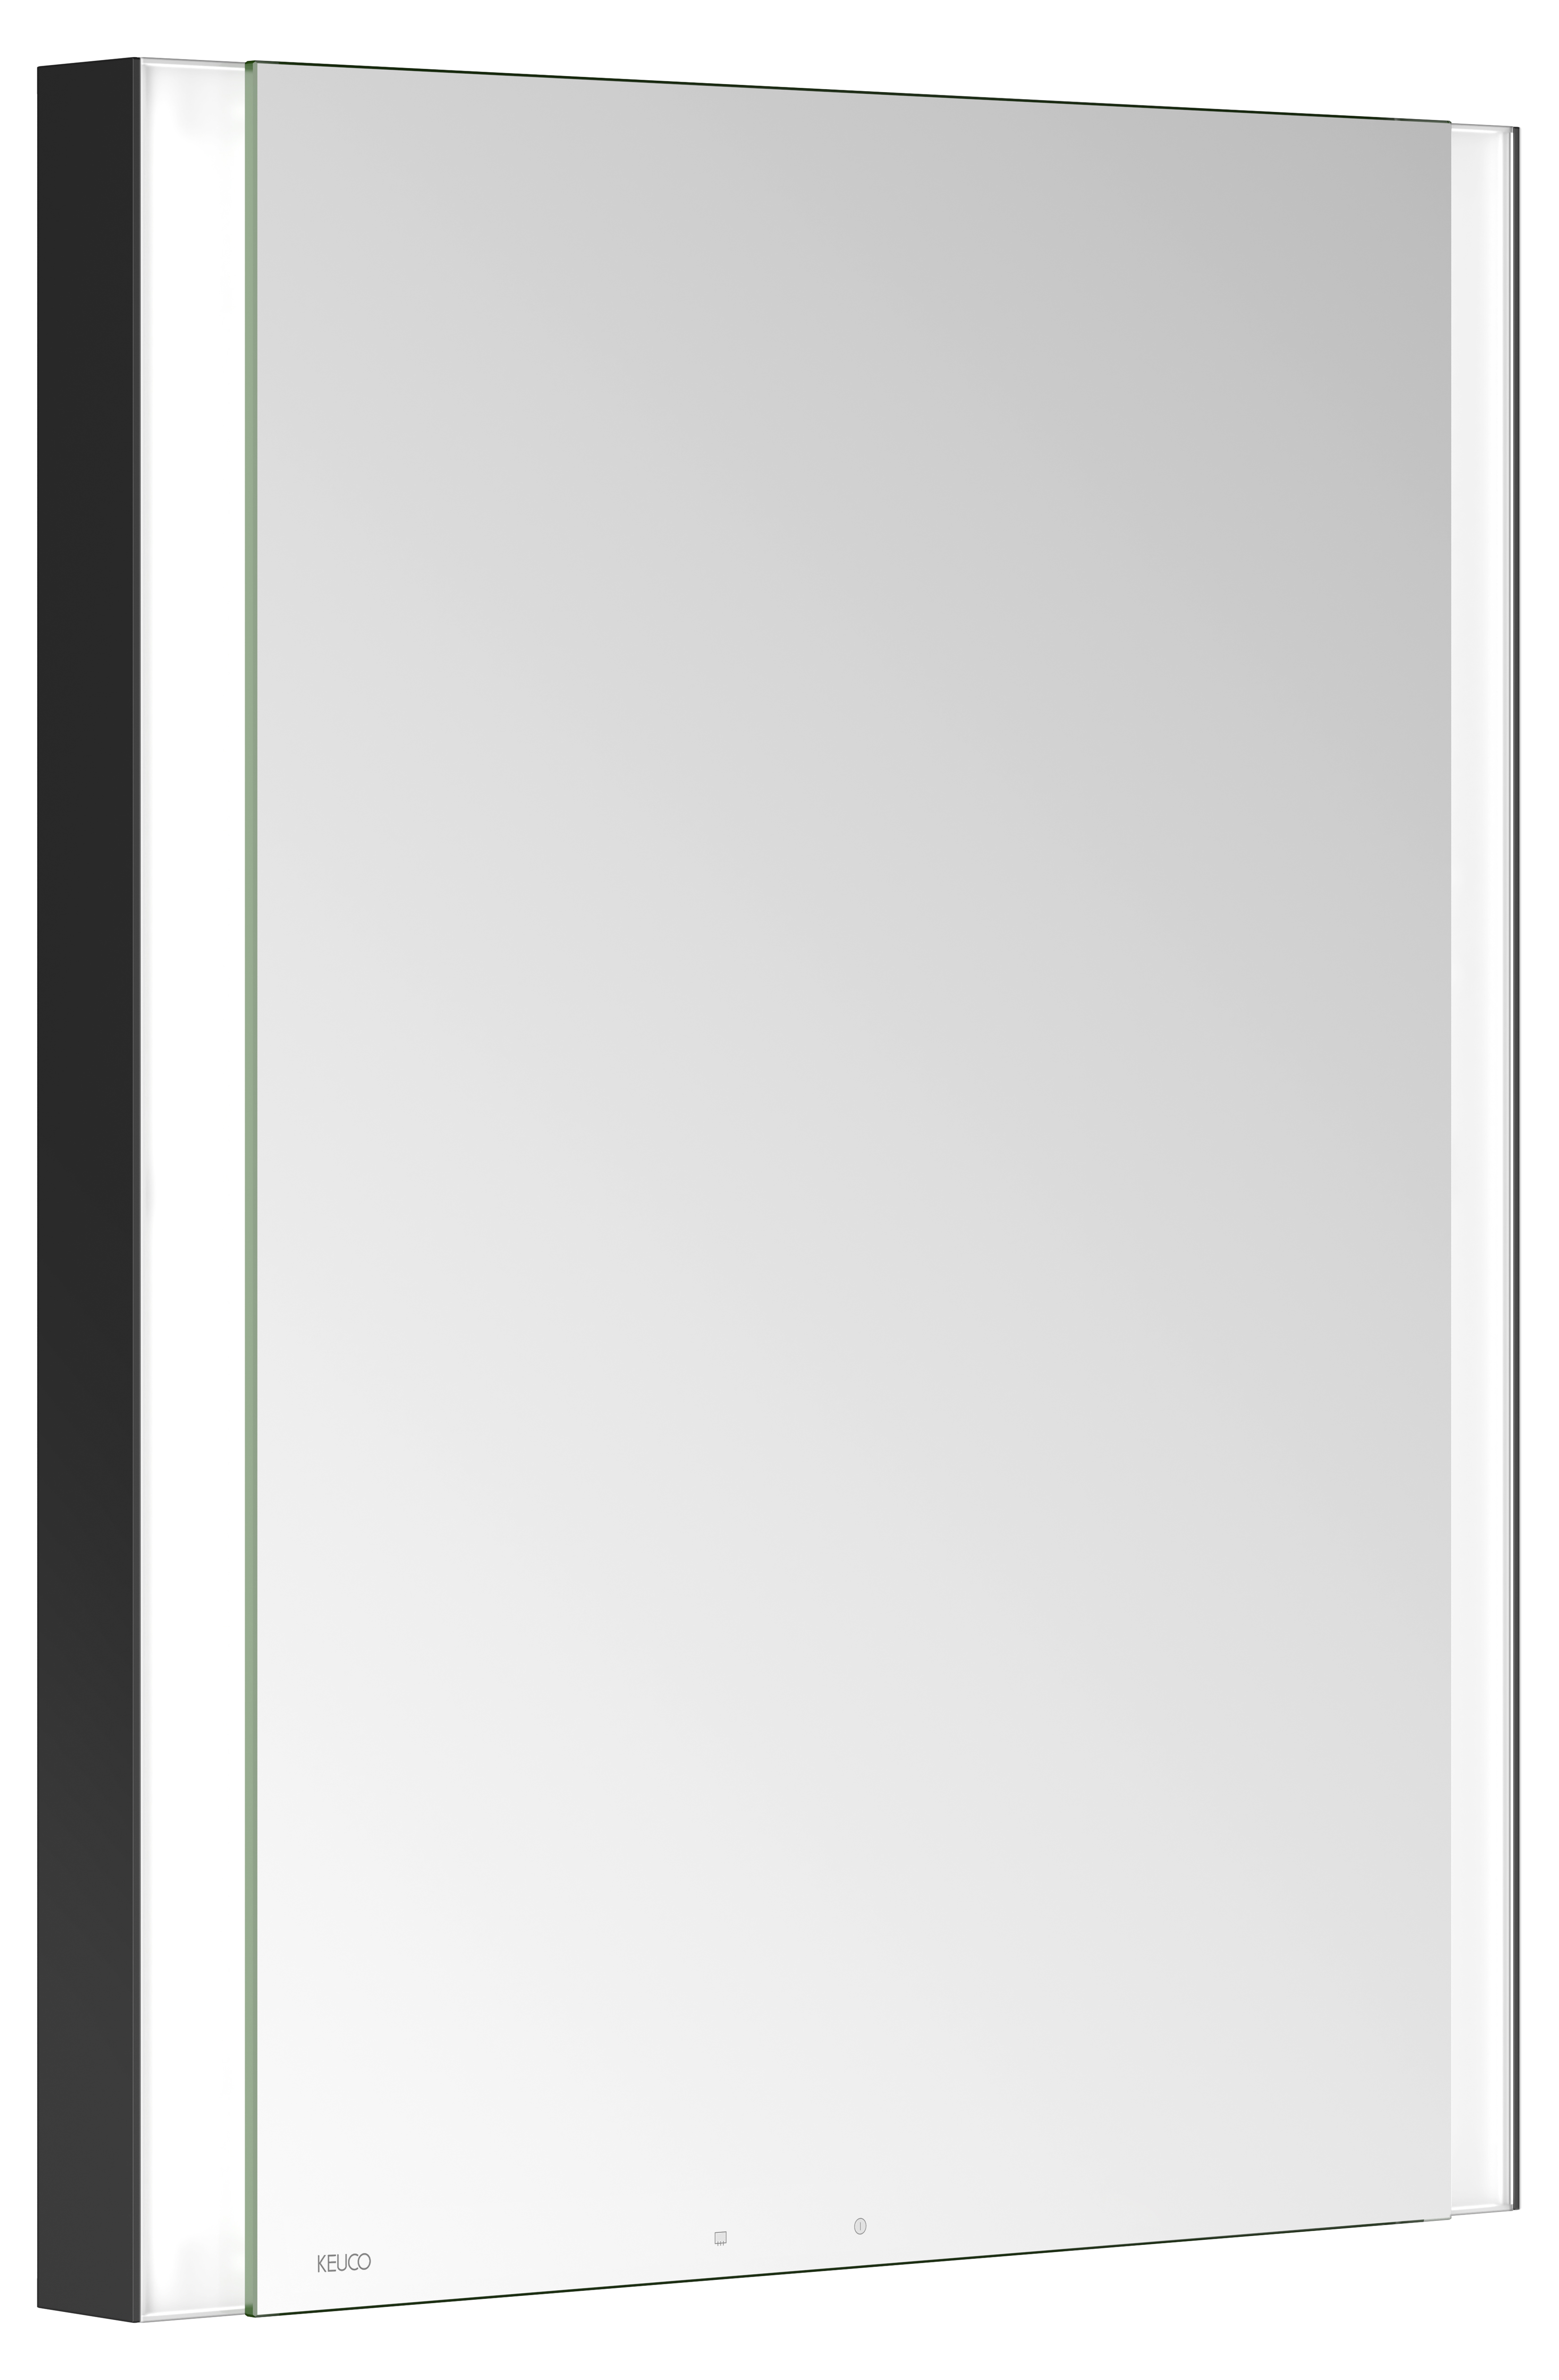 Левый зеркальный шкаф с подсветкой и подогревом для встраиваемого монтажа KEUCO Somaris 14511 371201 115 мм х 600 мм х 710 мм, с 1 поворотной дверцей, цвет корпуса Чёрный матовый